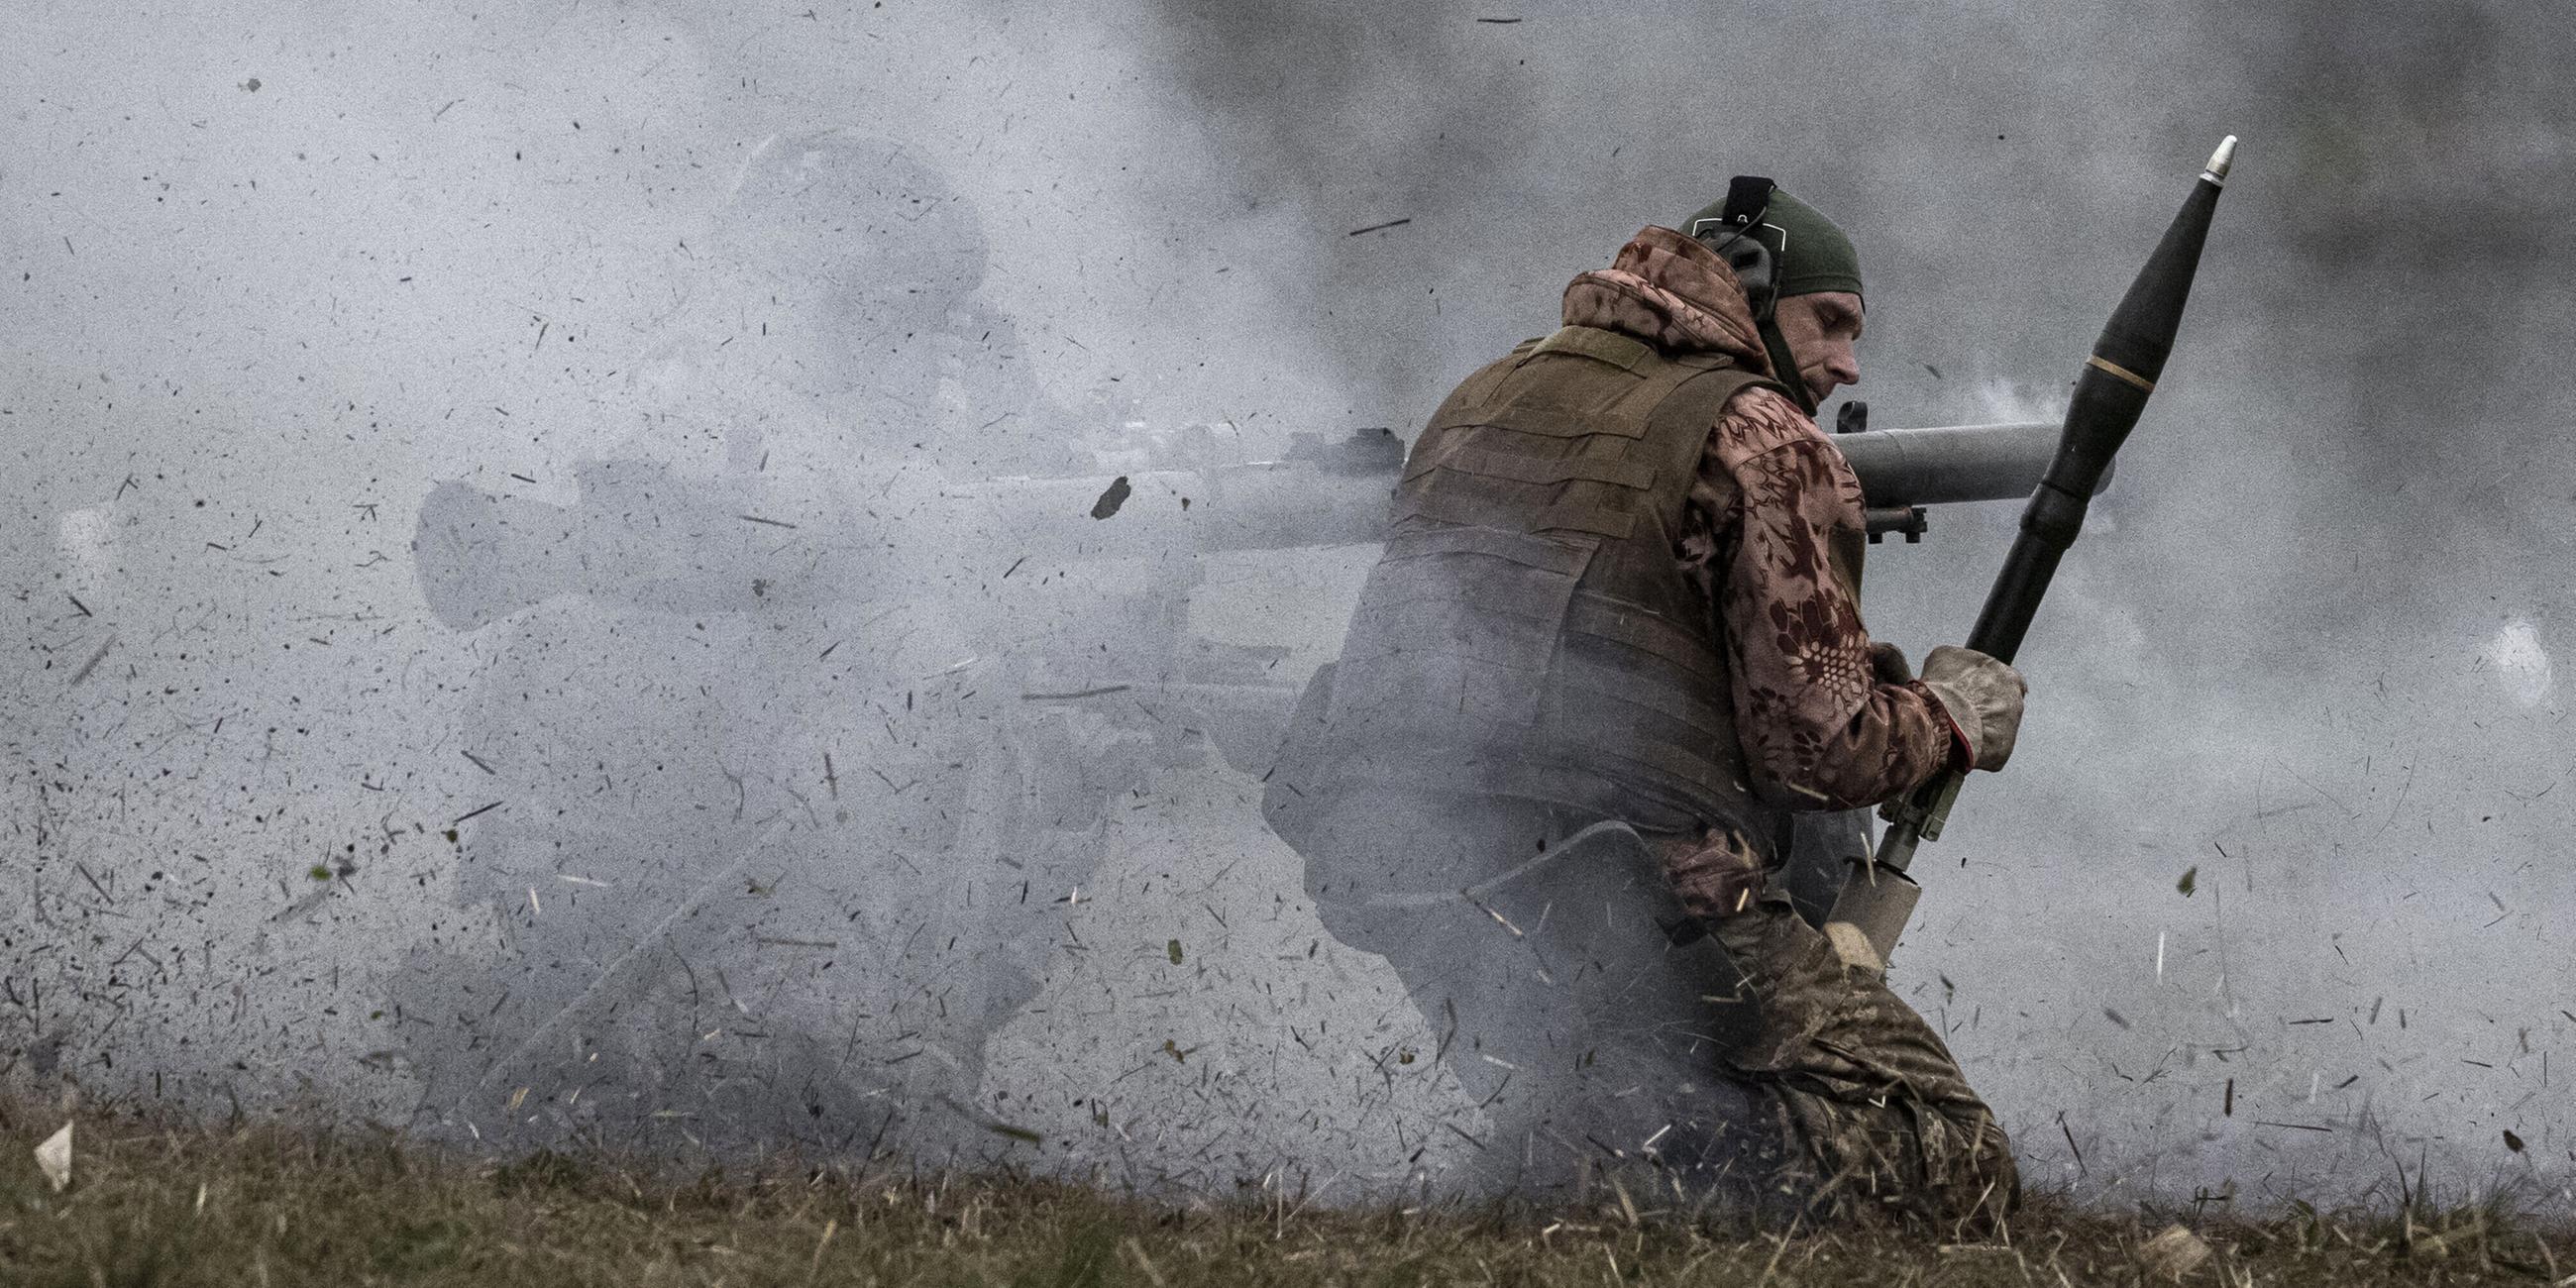 Ukrainische Streitkräfte während ihres Schießtrainings mit schweren Waffen in Gebieten nahe der Frontlinie in Saporischschja.